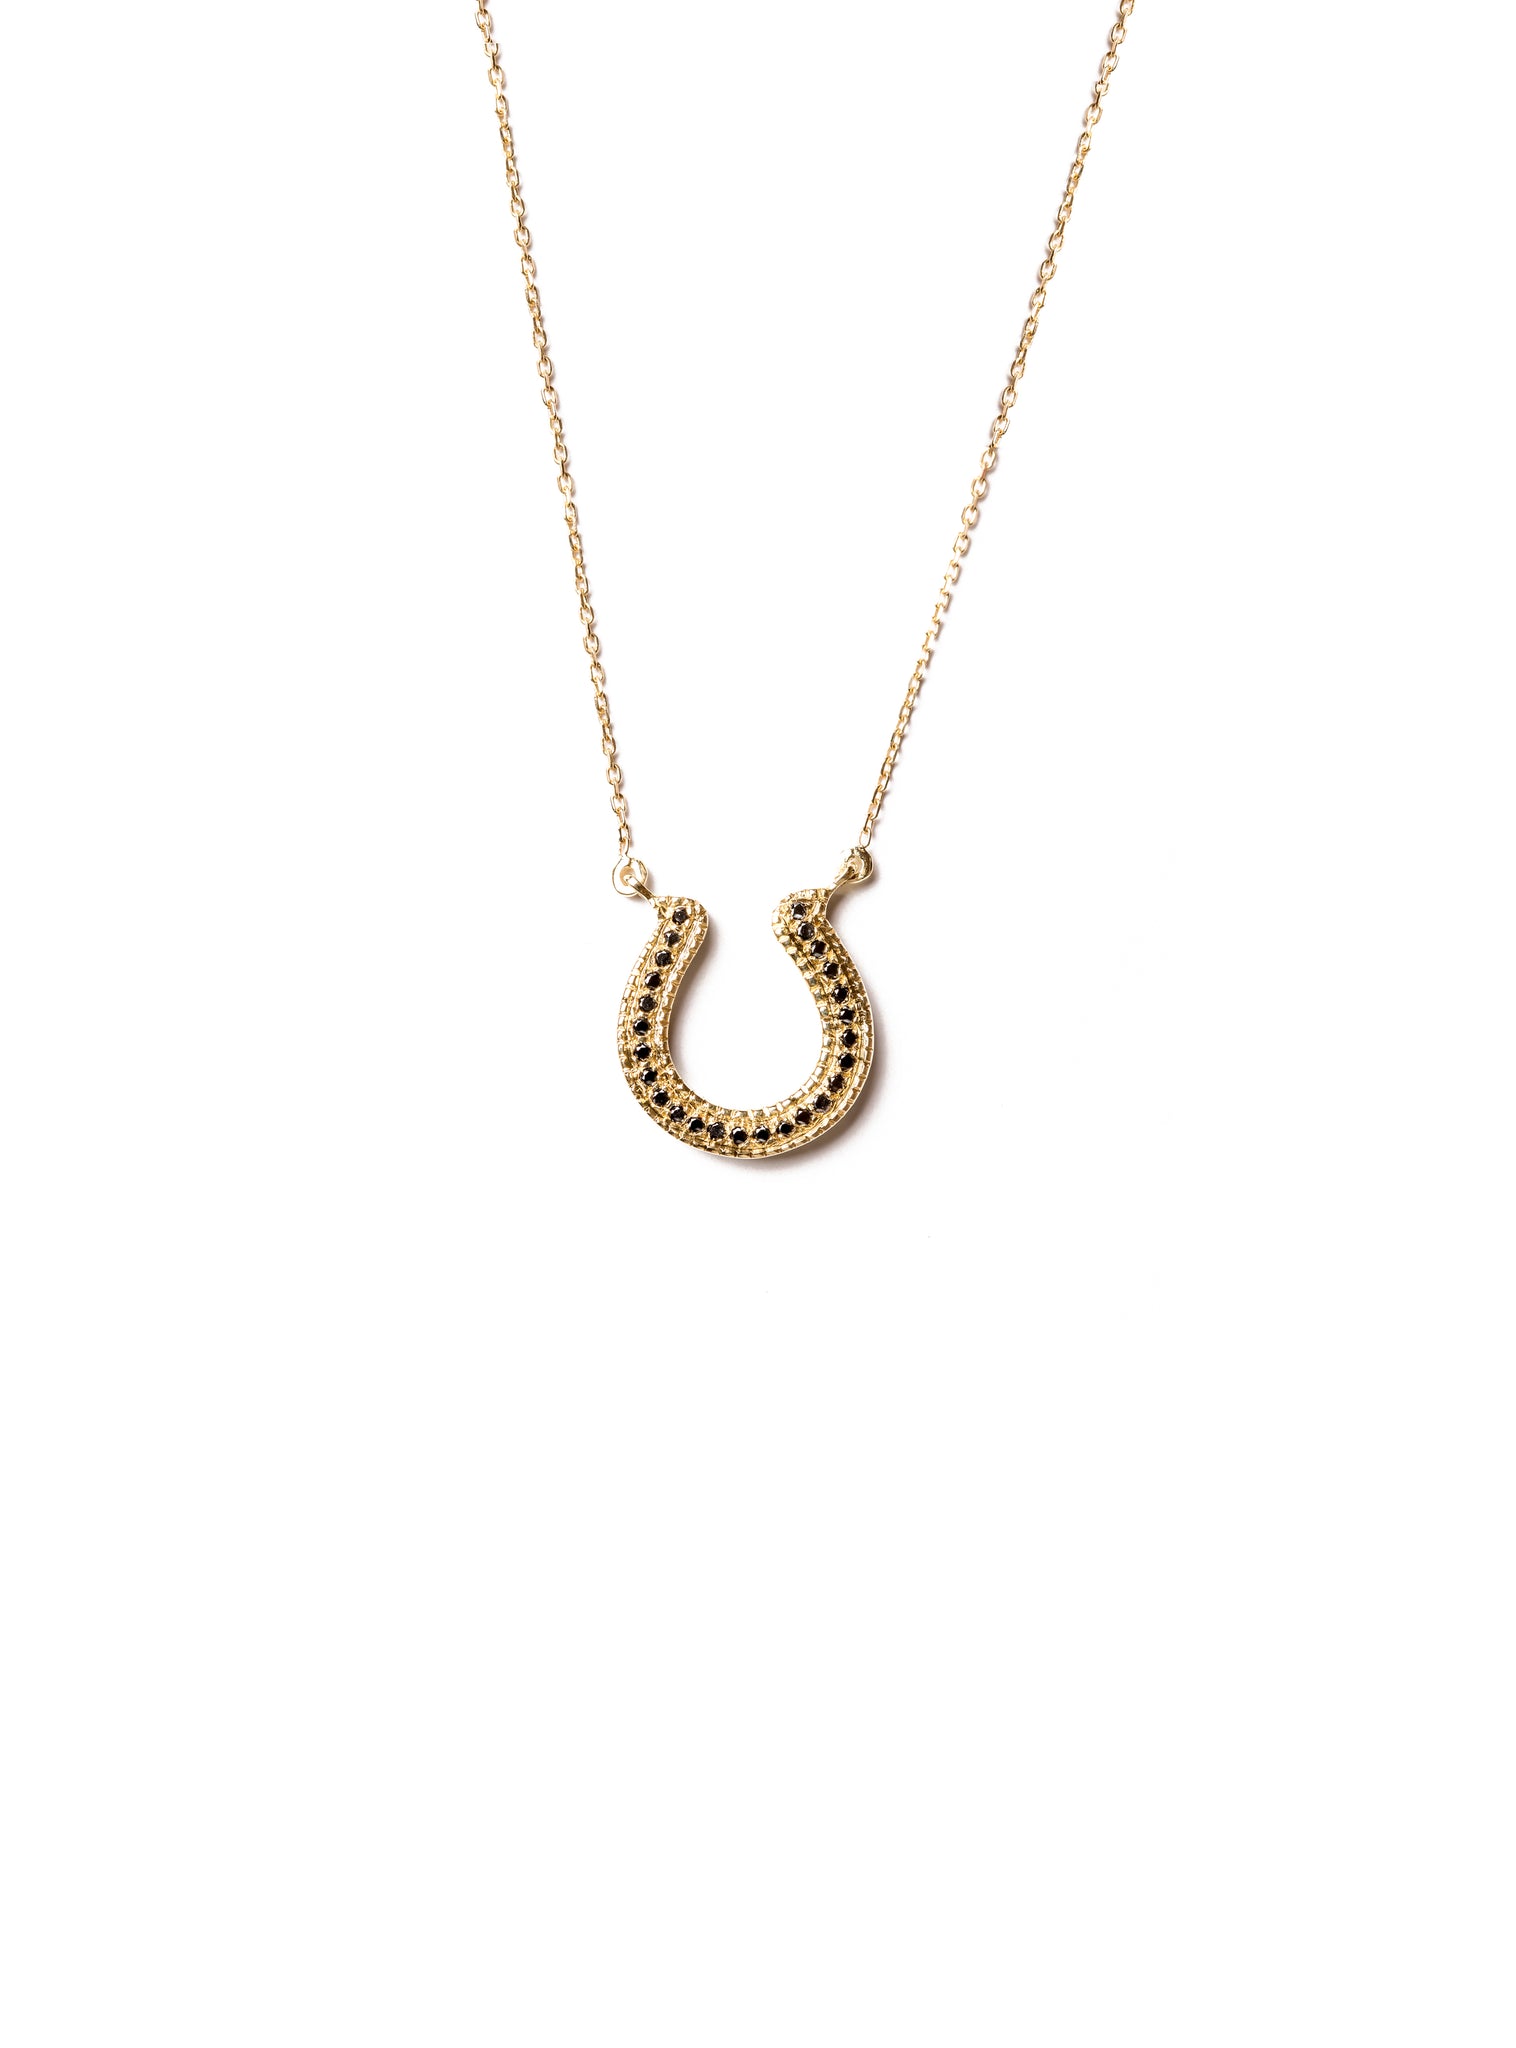 Horseshoe Necklace with Black Diamonds